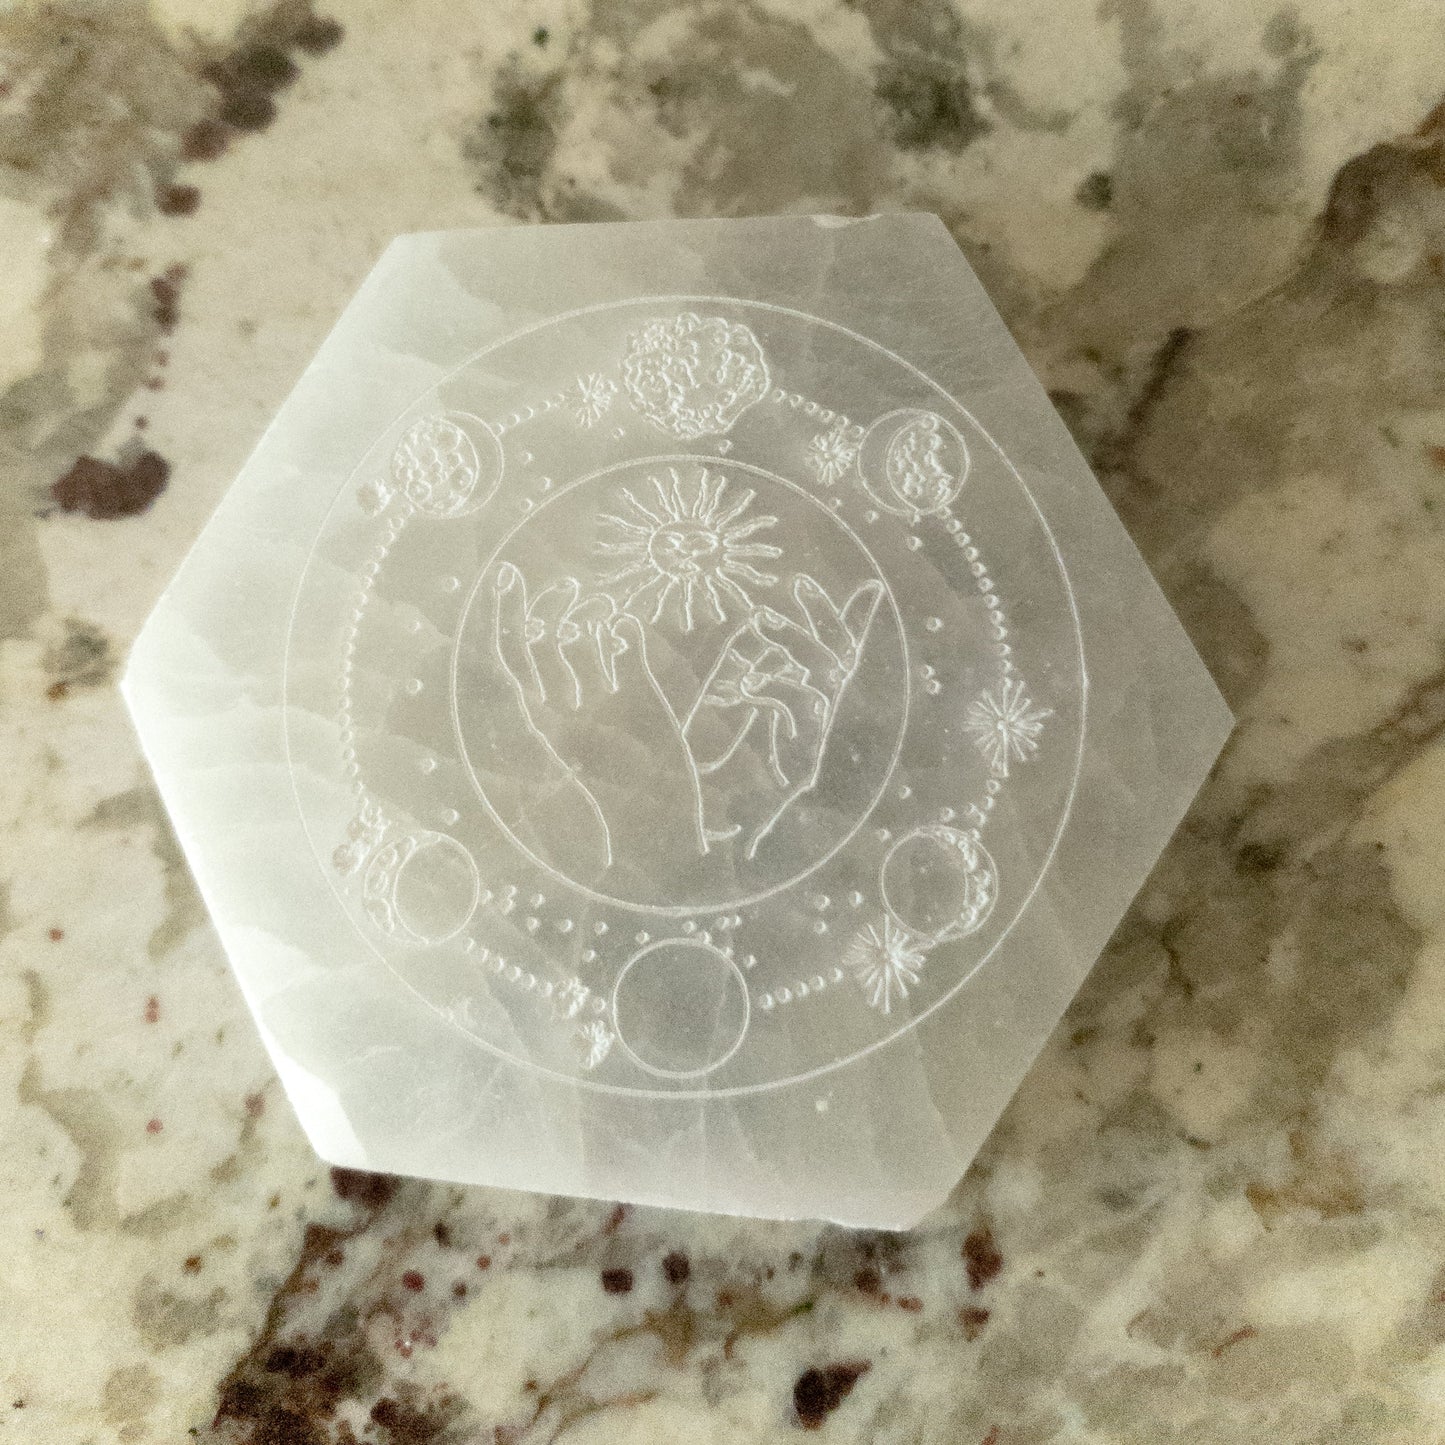 Engraved Selenite Hexagon Celestial Plate